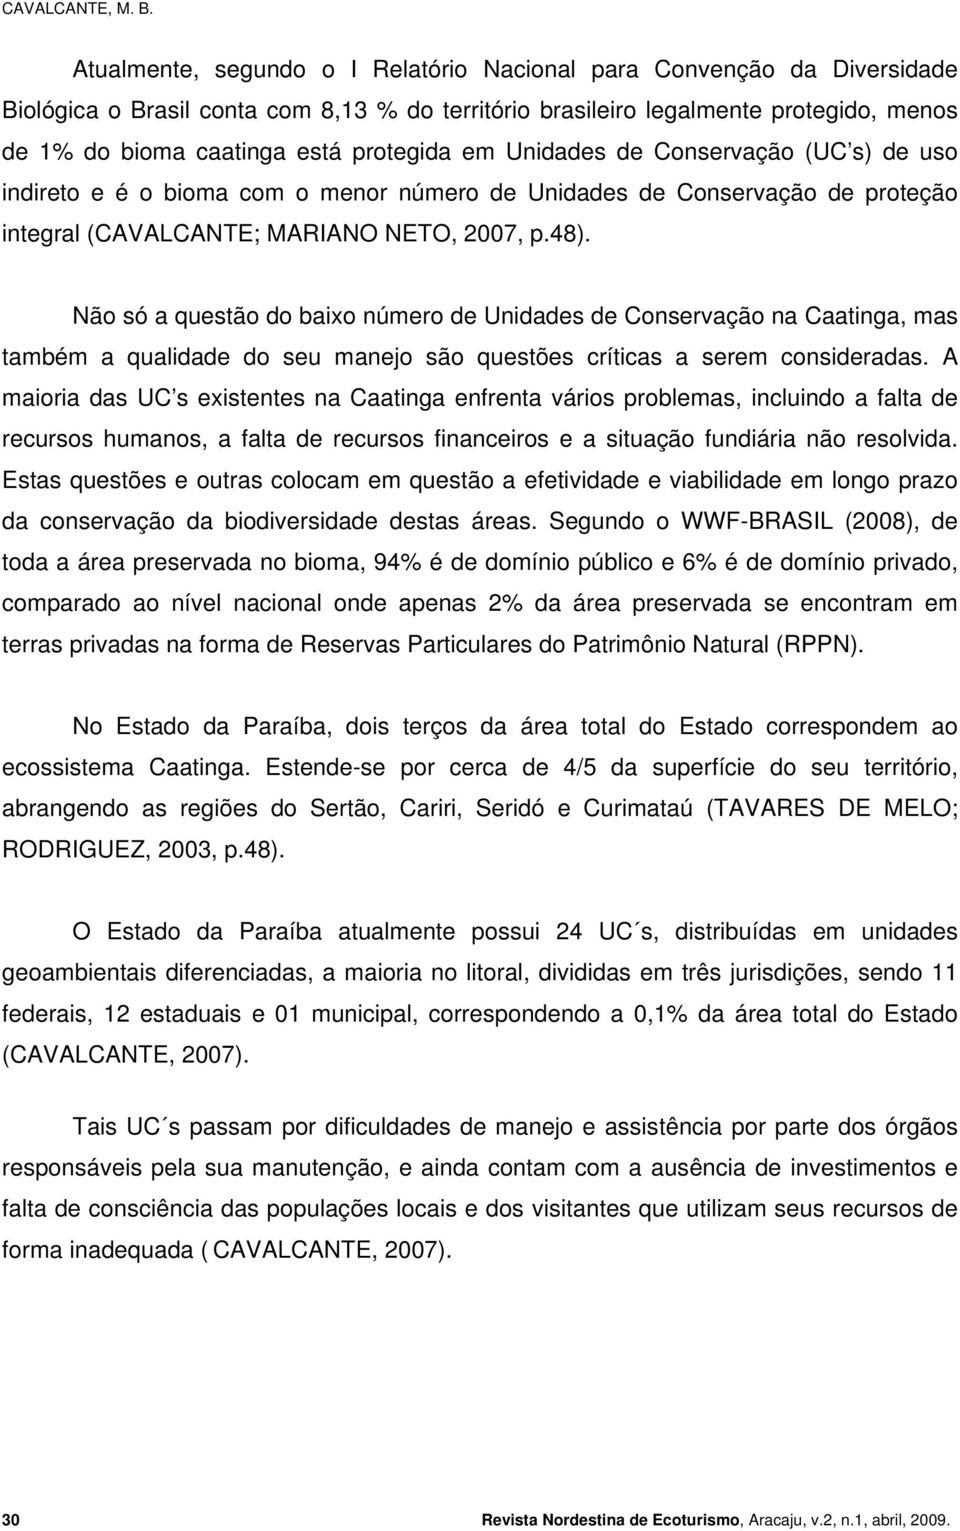 protegida em Unidades de Conservação (UC s) de uso indireto e é o bioma com o menor número de Unidades de Conservação de proteção integral (CAVALCANTE; MARIANO NETO, 2007, p.48).